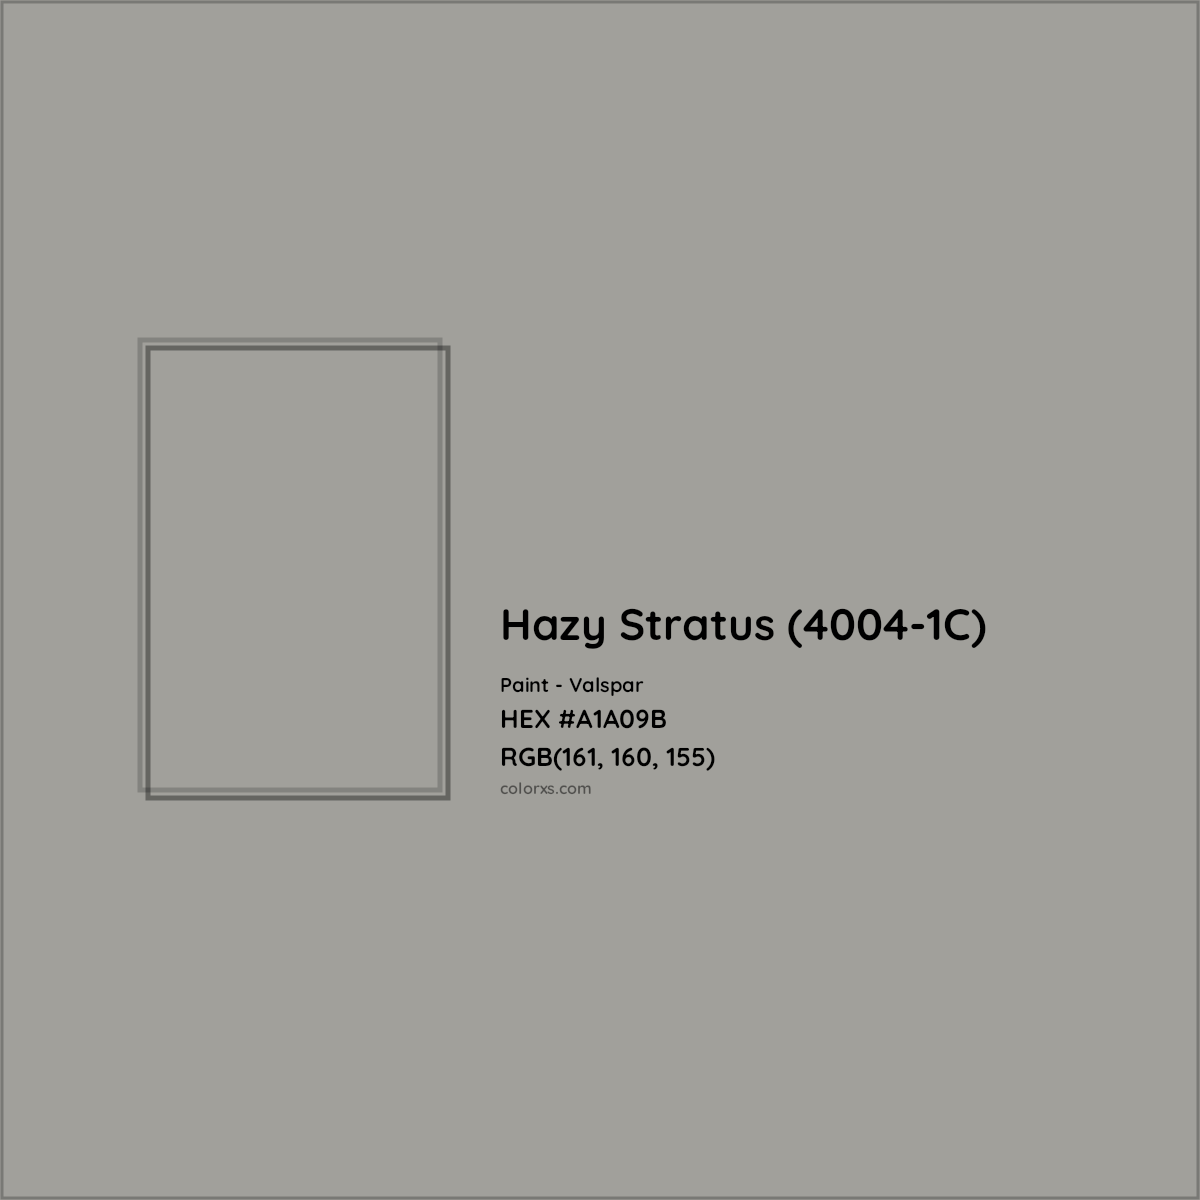 HEX #A1A09B Hazy Stratus (4004-1C) Paint Valspar - Color Code